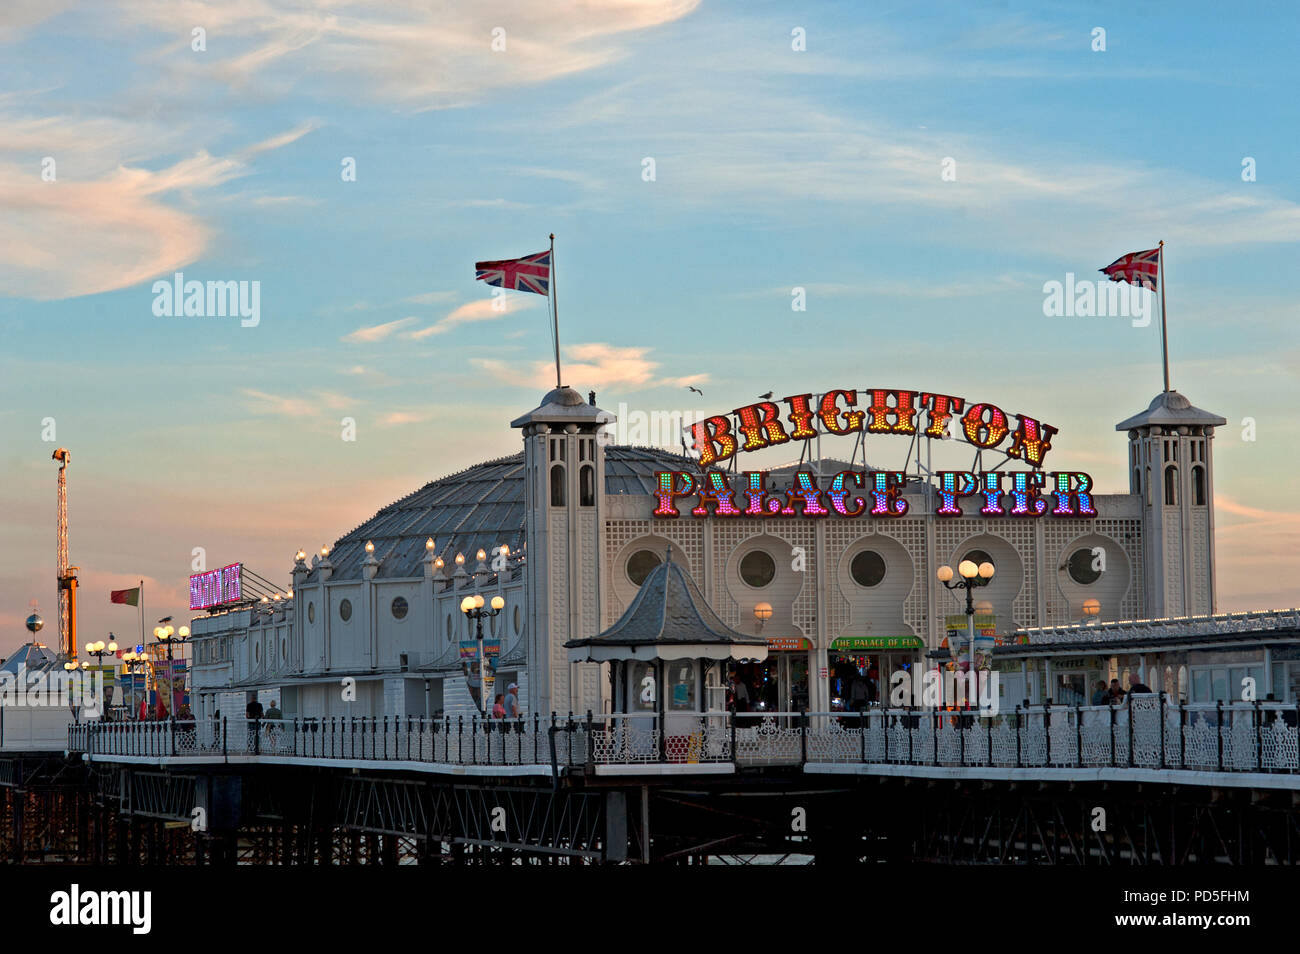 Die berühmten Brighton Palace Pier im Süden von England Küste änderte seinen Namen 2018 in Brighton Palace Pier, eine Kombination der beiden vorherigen Namen. Stockfoto